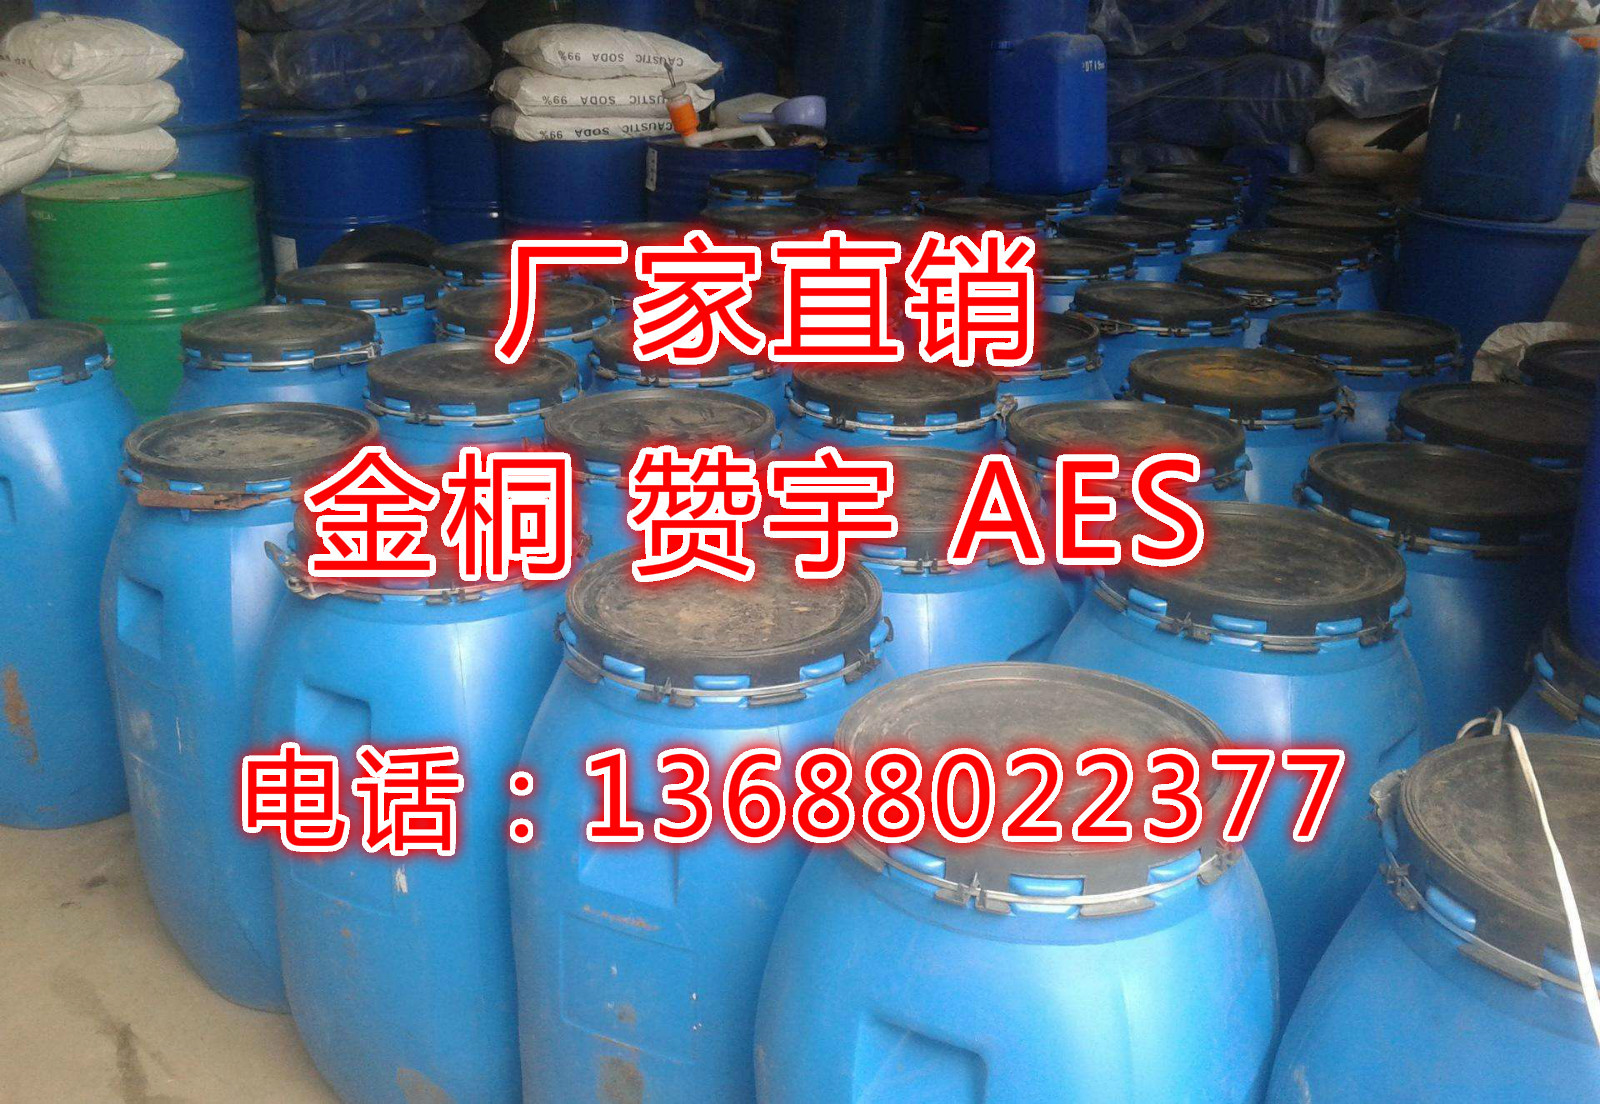 厂家批发 aes  零售 金桐 赞宇 AES 表面活性剂 价格优惠